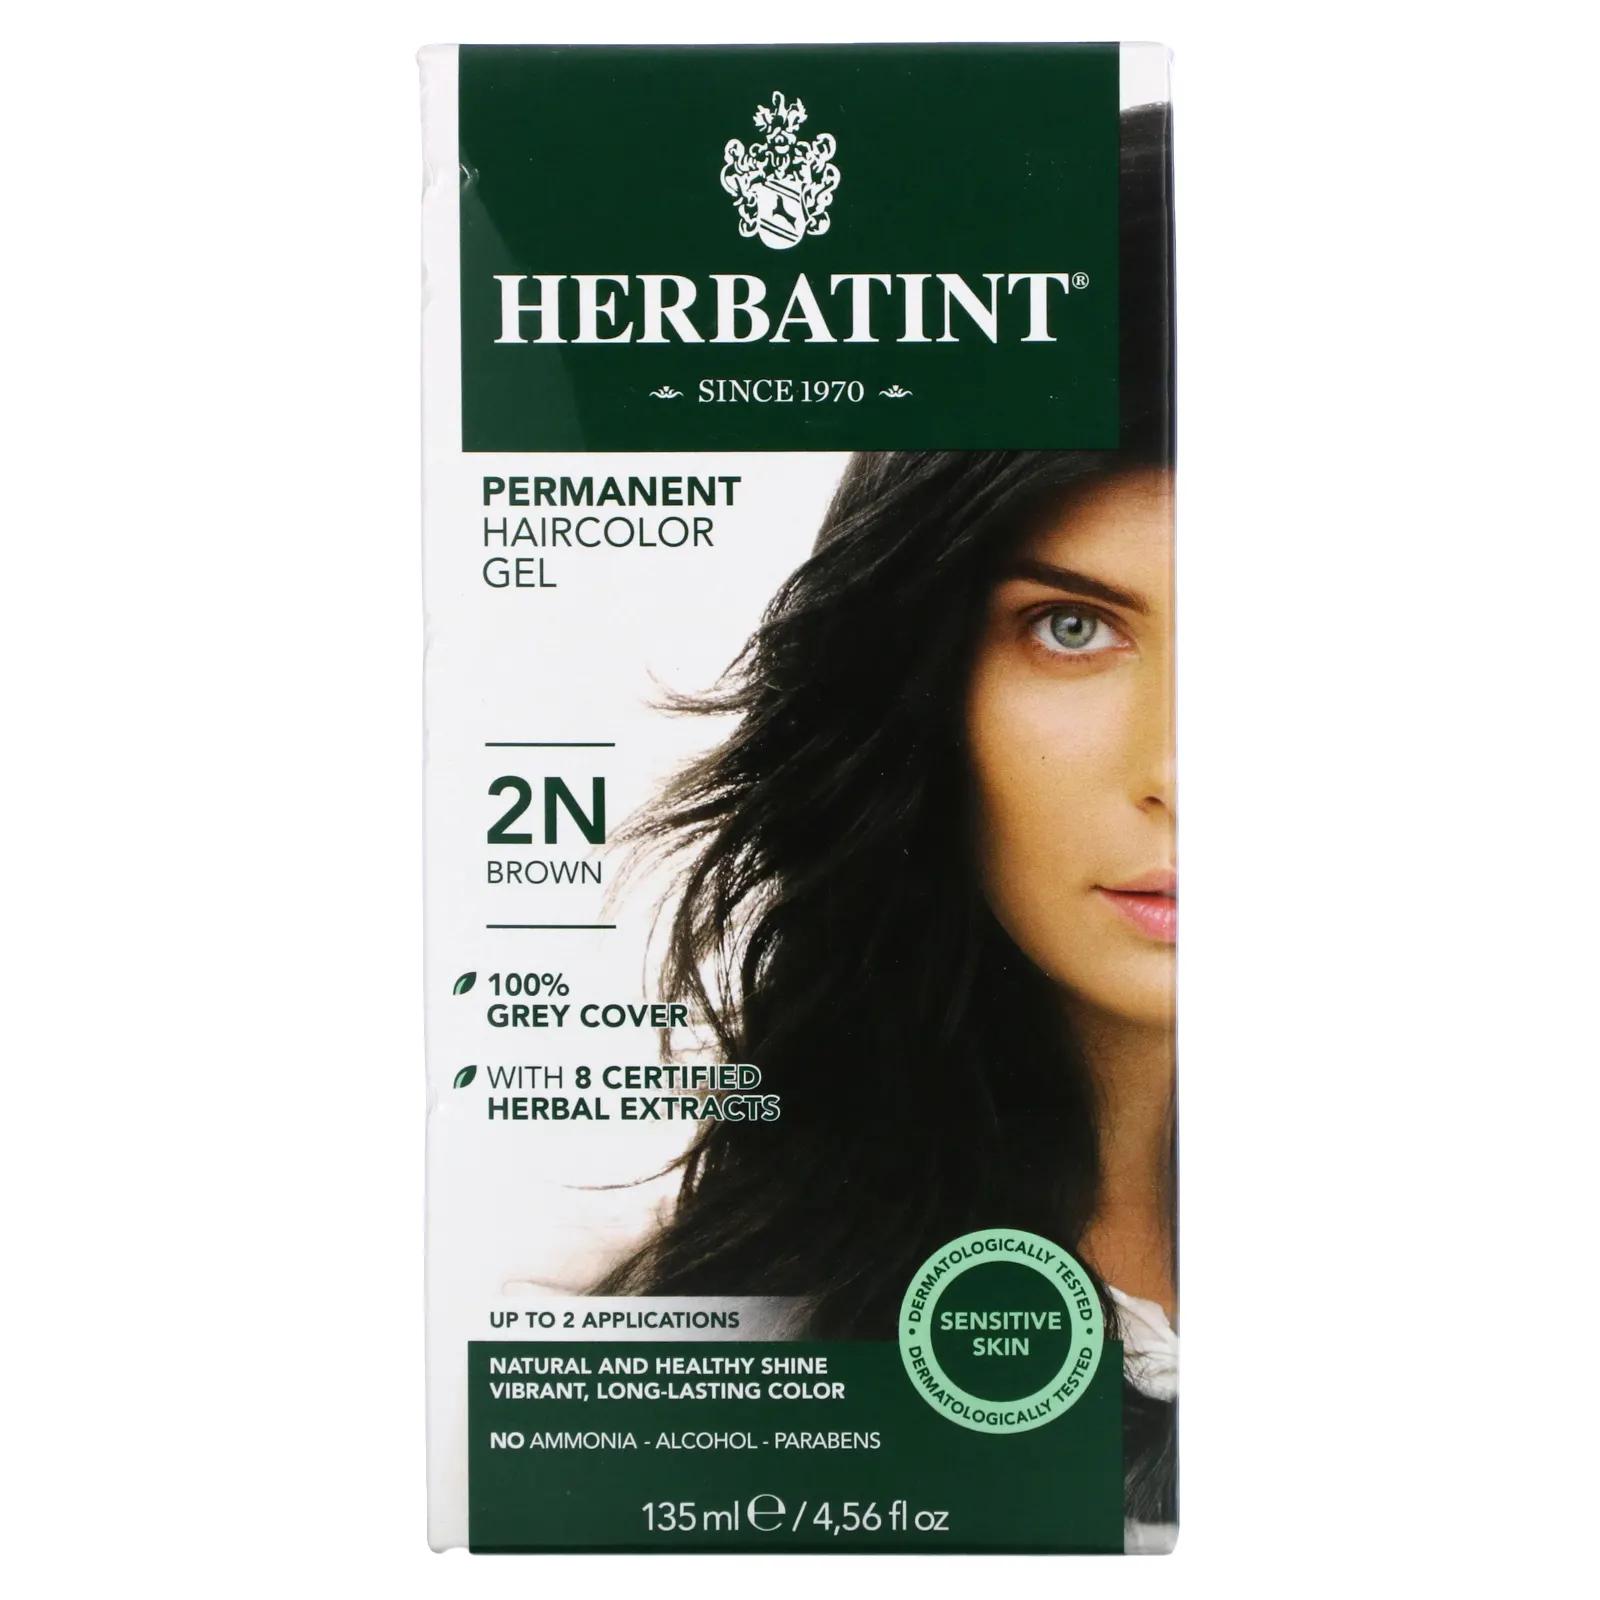 Herbatint Перманентная краска-гель для волос 2N коричневый 4,56 жидкой унции (135 мл) herbatint перманентная краска гель для волос 4r медный каштан 4 56 жидкой унции 135 мл